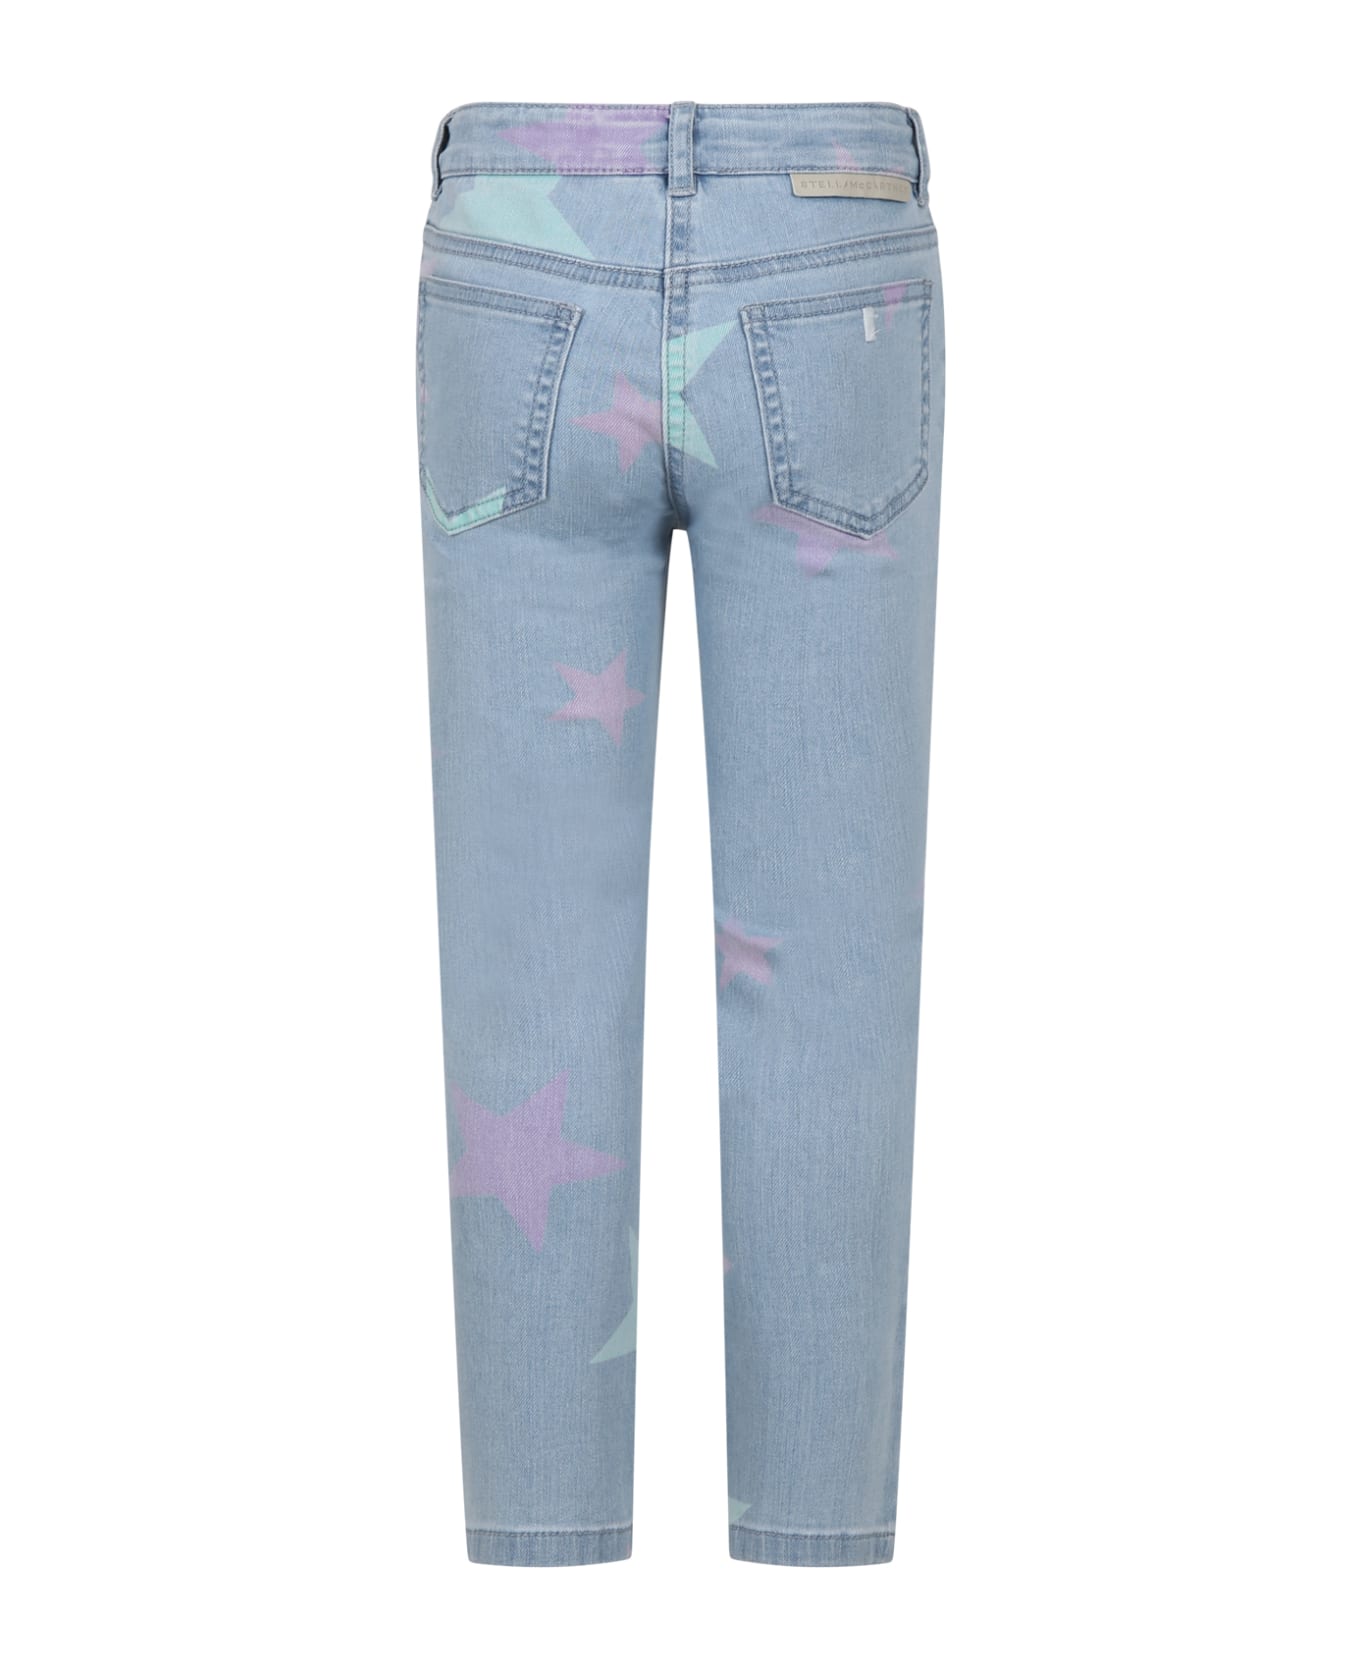 Stella McCartney Kids Denim Jeans For Girl With All-over Stars - Denim